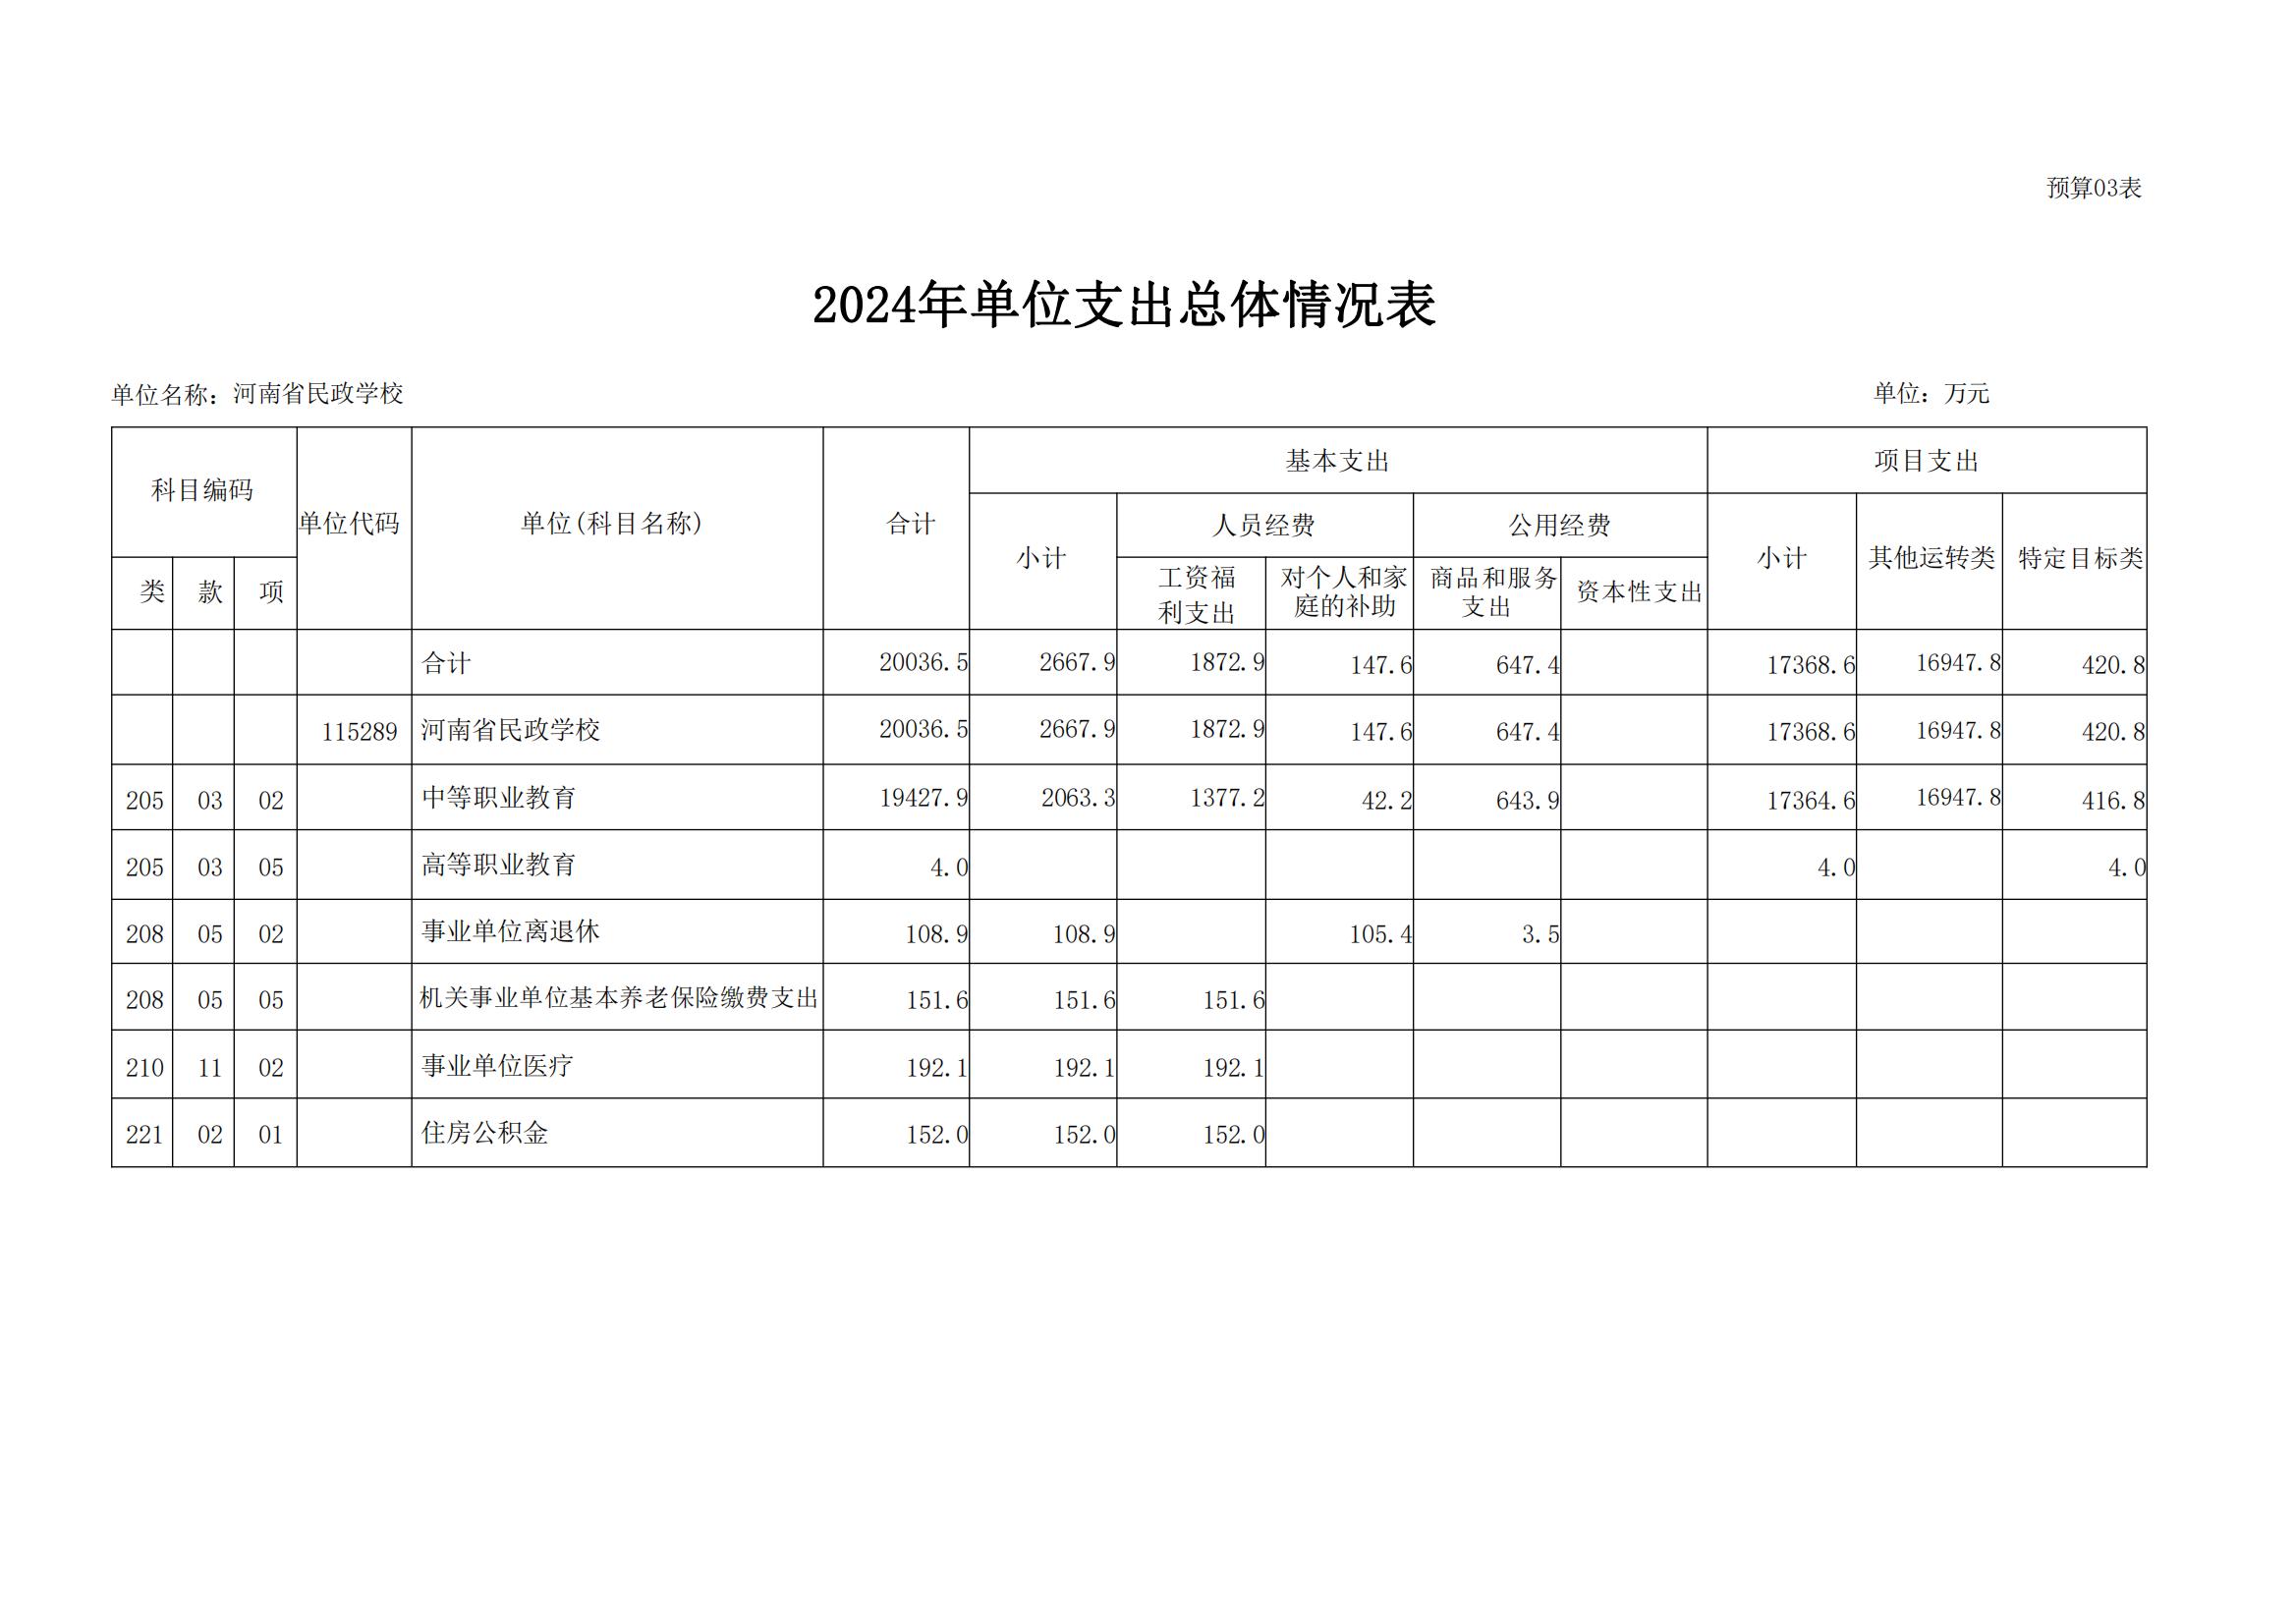 河南省民政学校2024年部门预算公开(1)_10.jpg